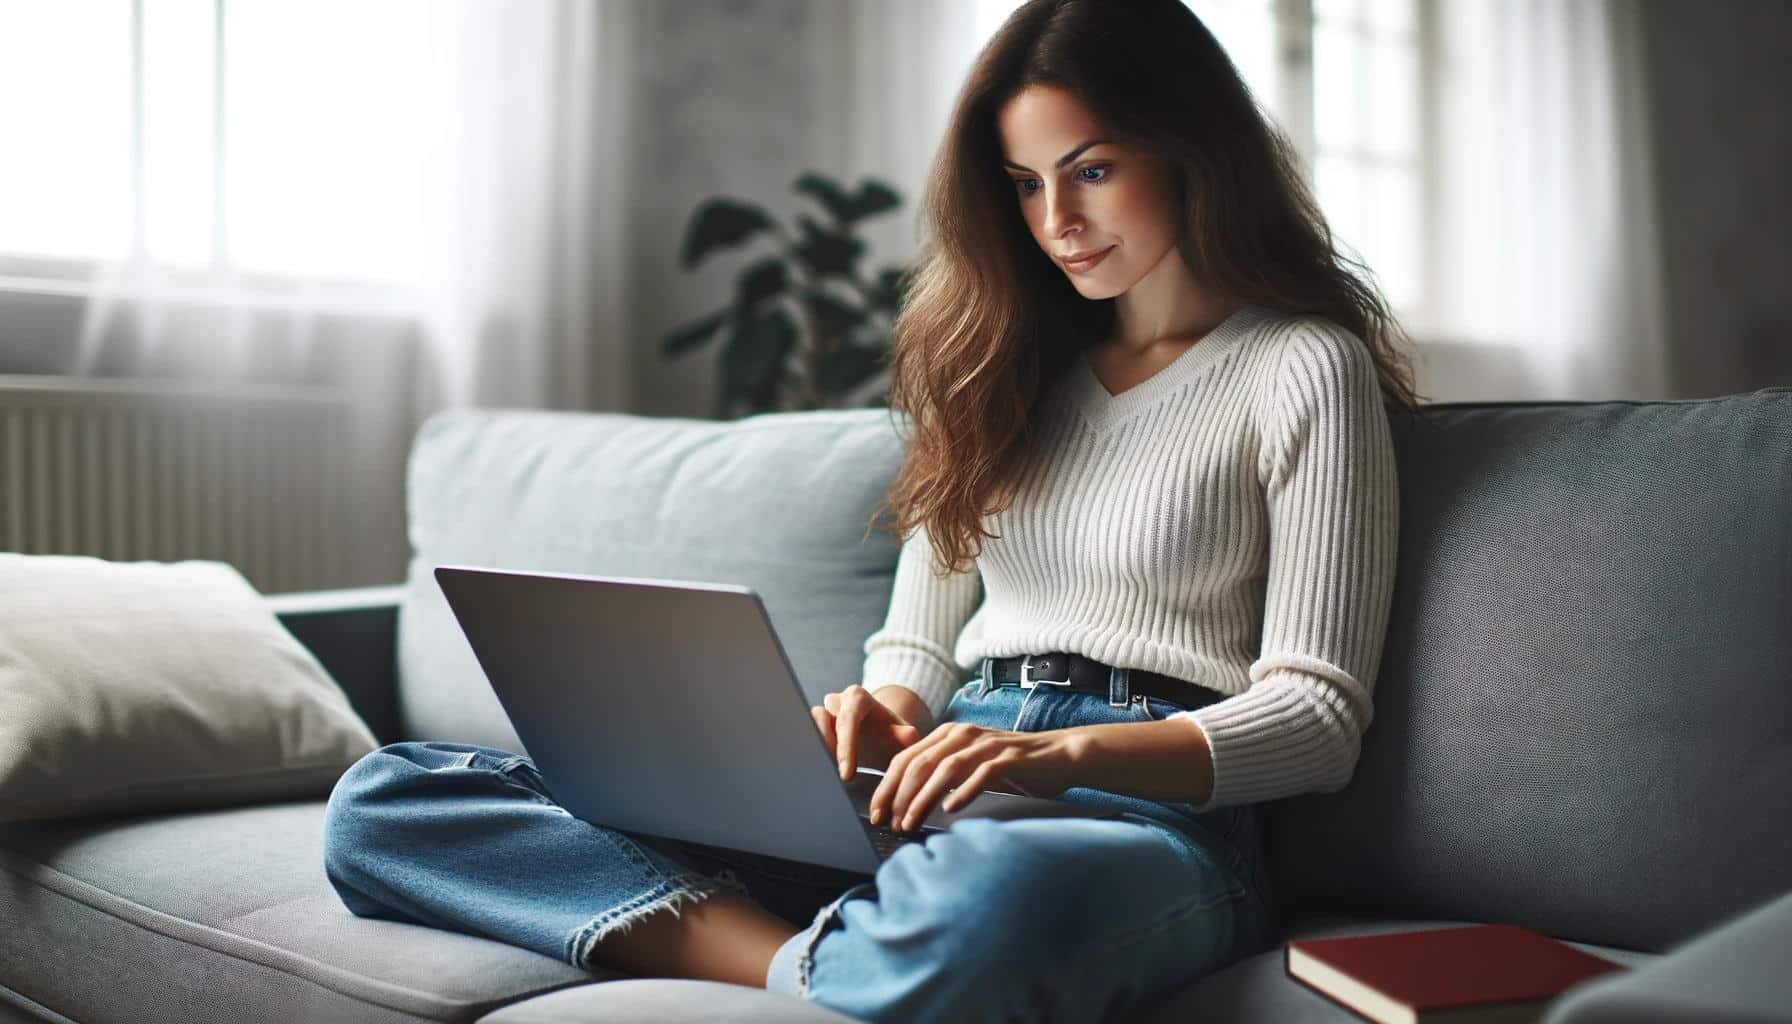 DALL·E Bild einer Frau, die vor einem Laptop sitzt und mit den Fingern auf der Tastatur tippt2